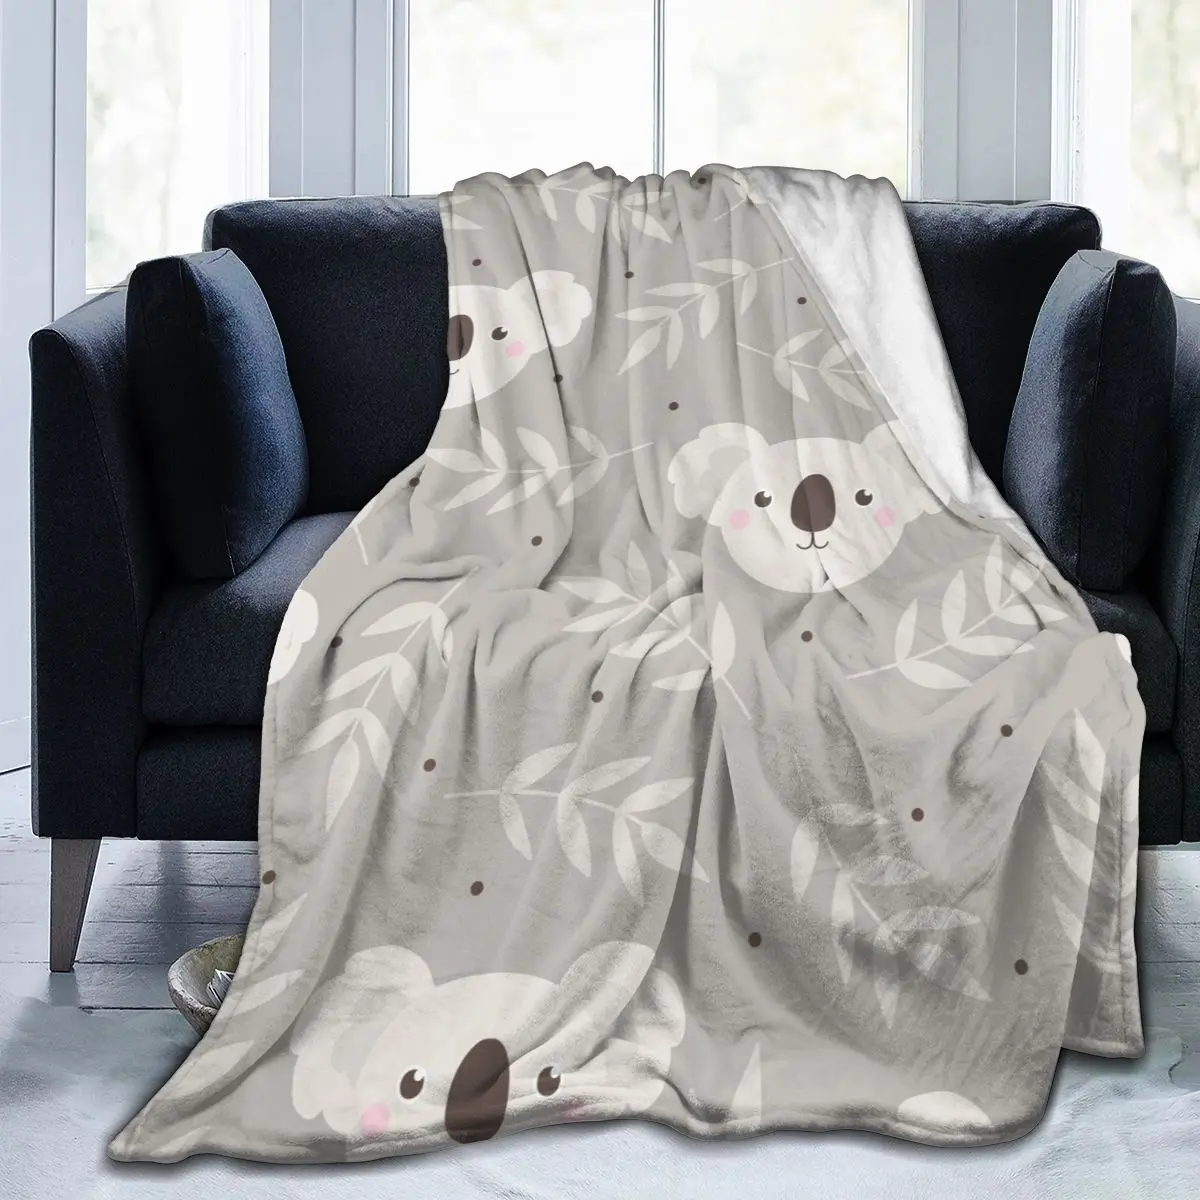 

Мягкое теплое фланелевое одеяло, милое дорожное одеяло коала и листья, зимнее тонкое покрывало для кровати и дивана